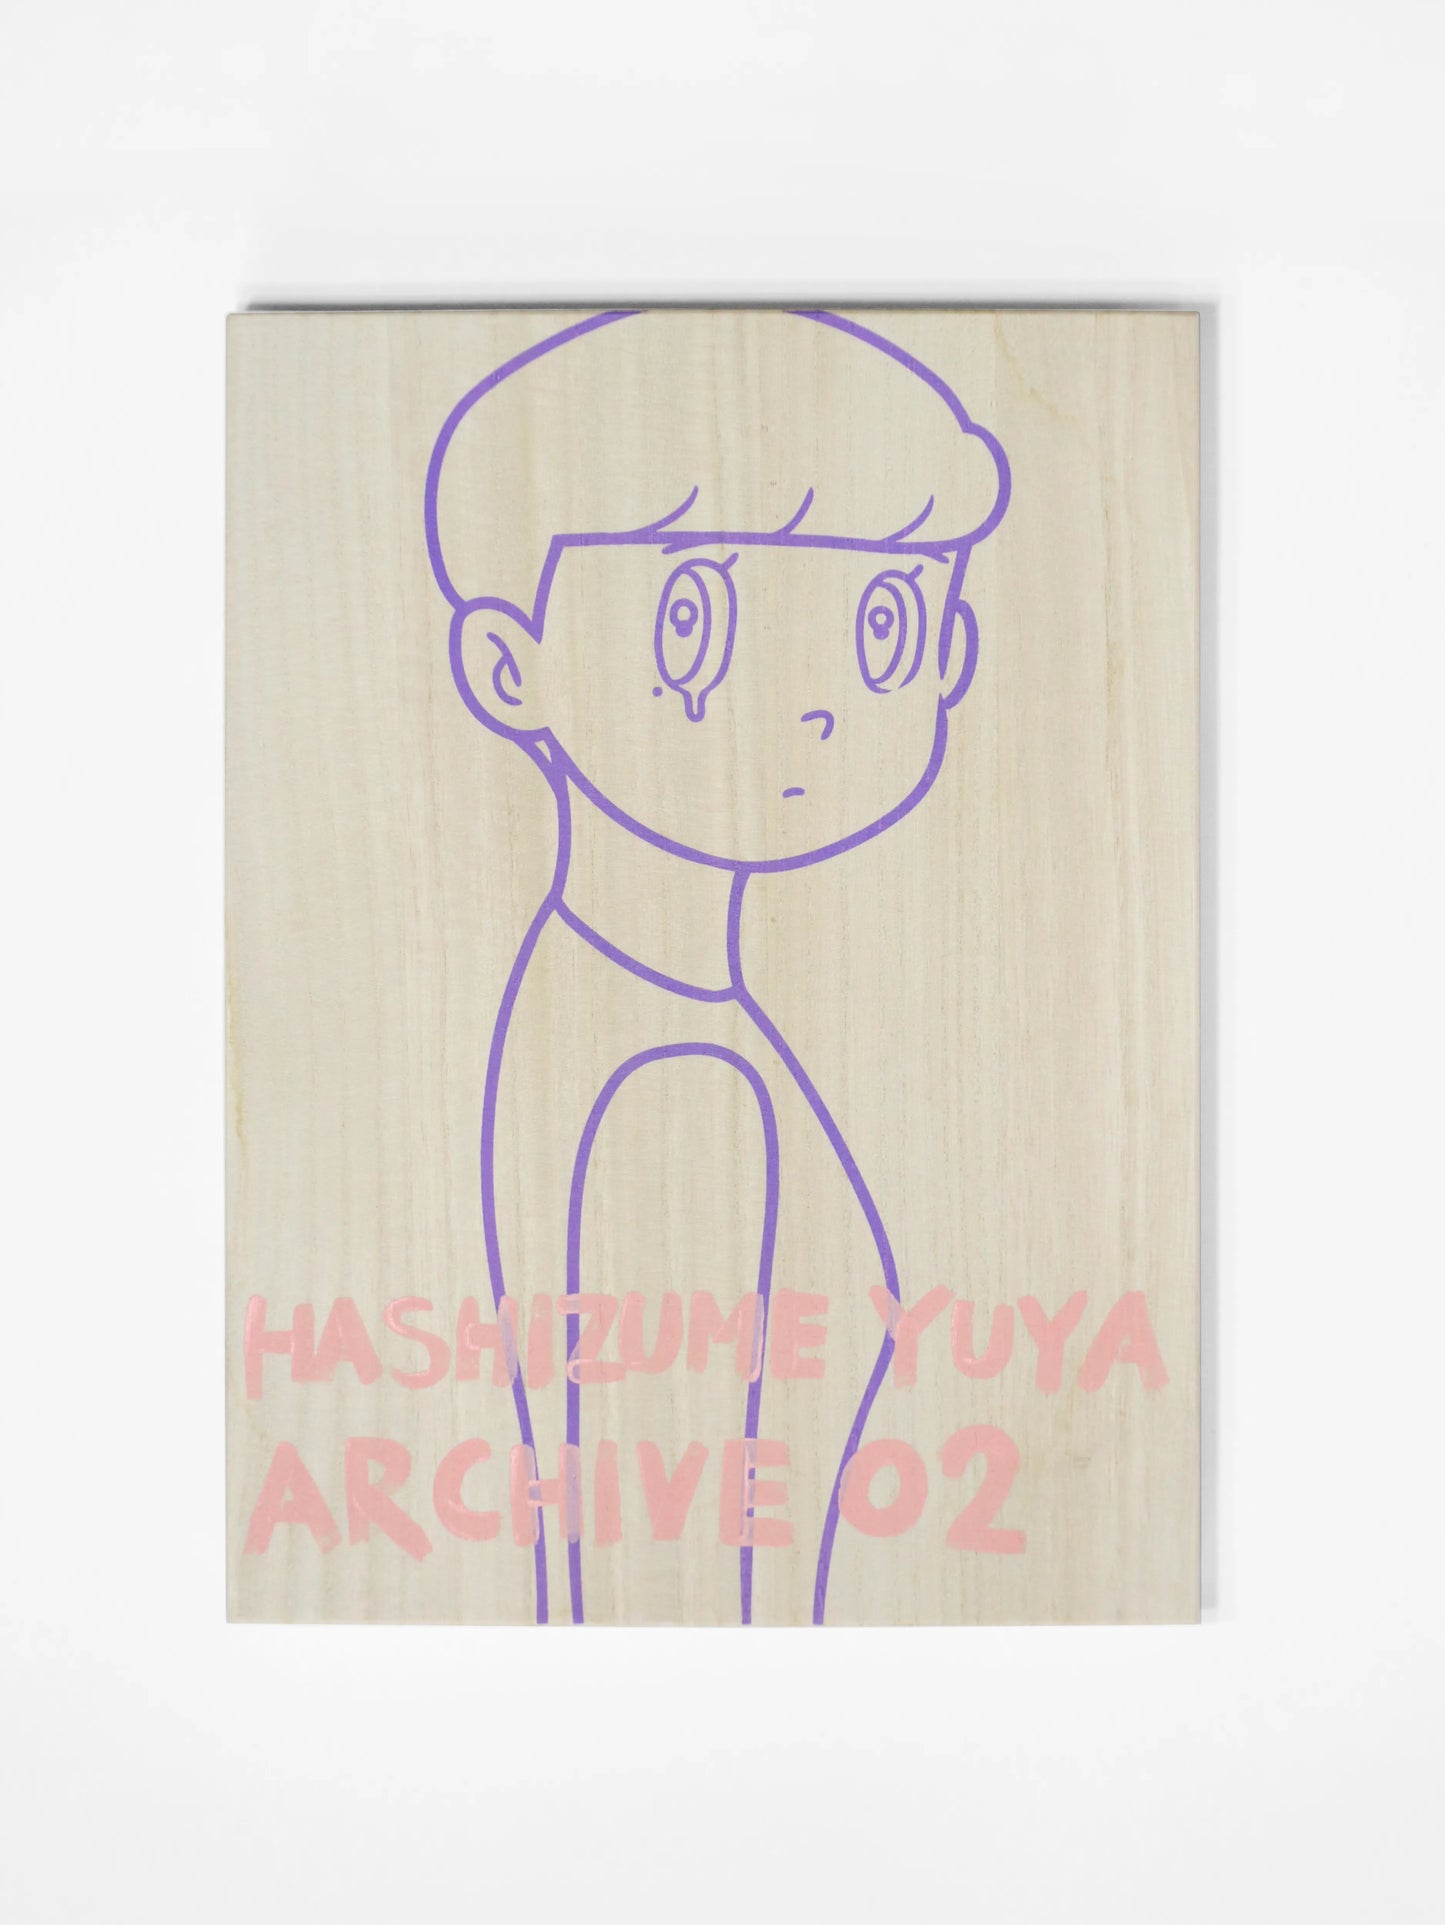 YUYA HASHIZUME ARCHIVE BOX 02_15